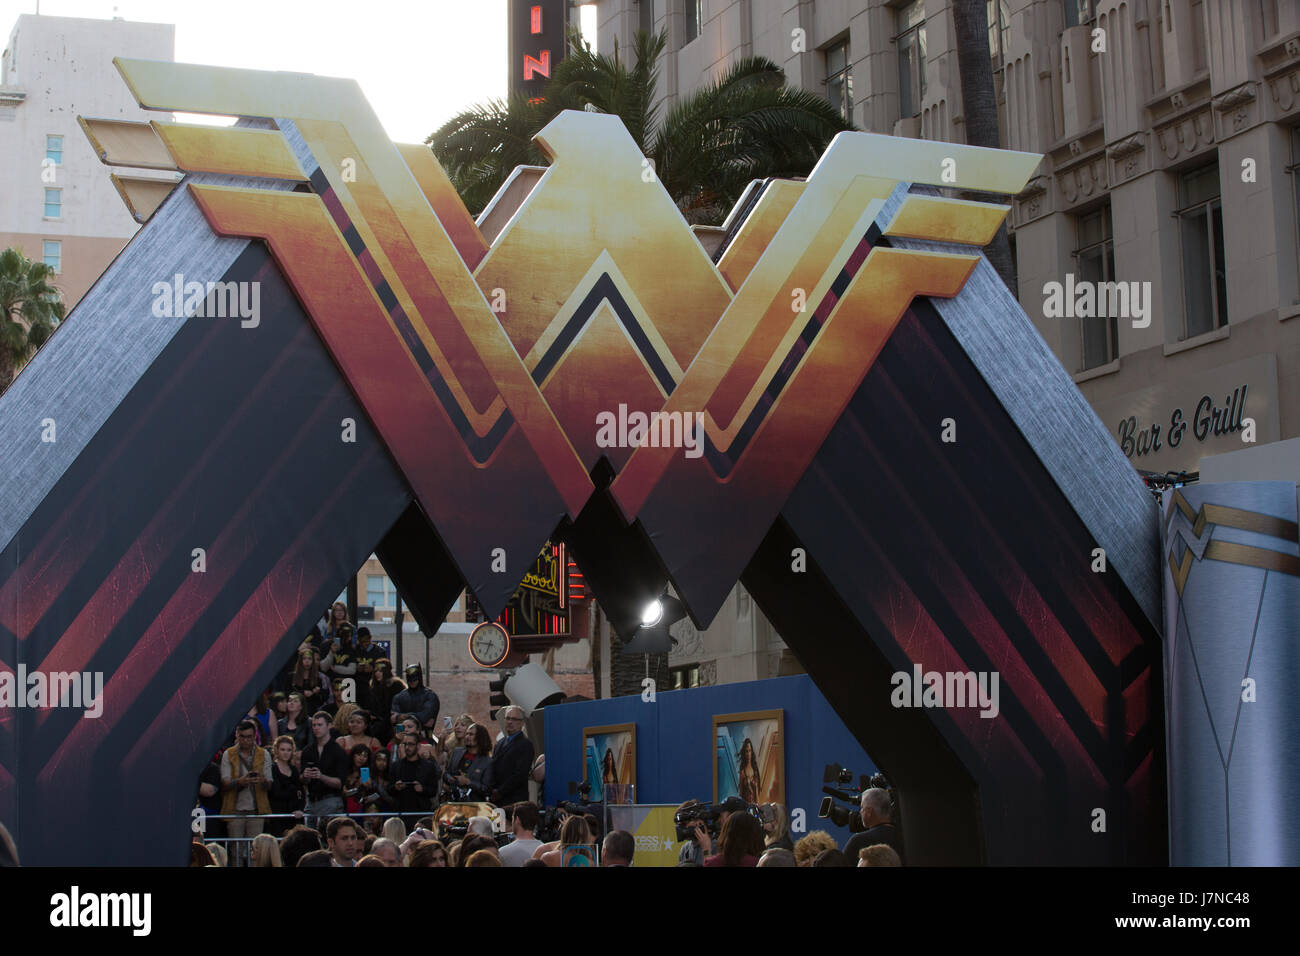 Hollywood, Californie, USA. 25 mai, 2017. Atmosphère à la première de Warner Bros Pictures' 'Wonder Woman' au Pantages Theatre le 25 mai 2017 à Hollywood, Californie. Crédit : l'accès Photo/Alamy Live News Banque D'Images